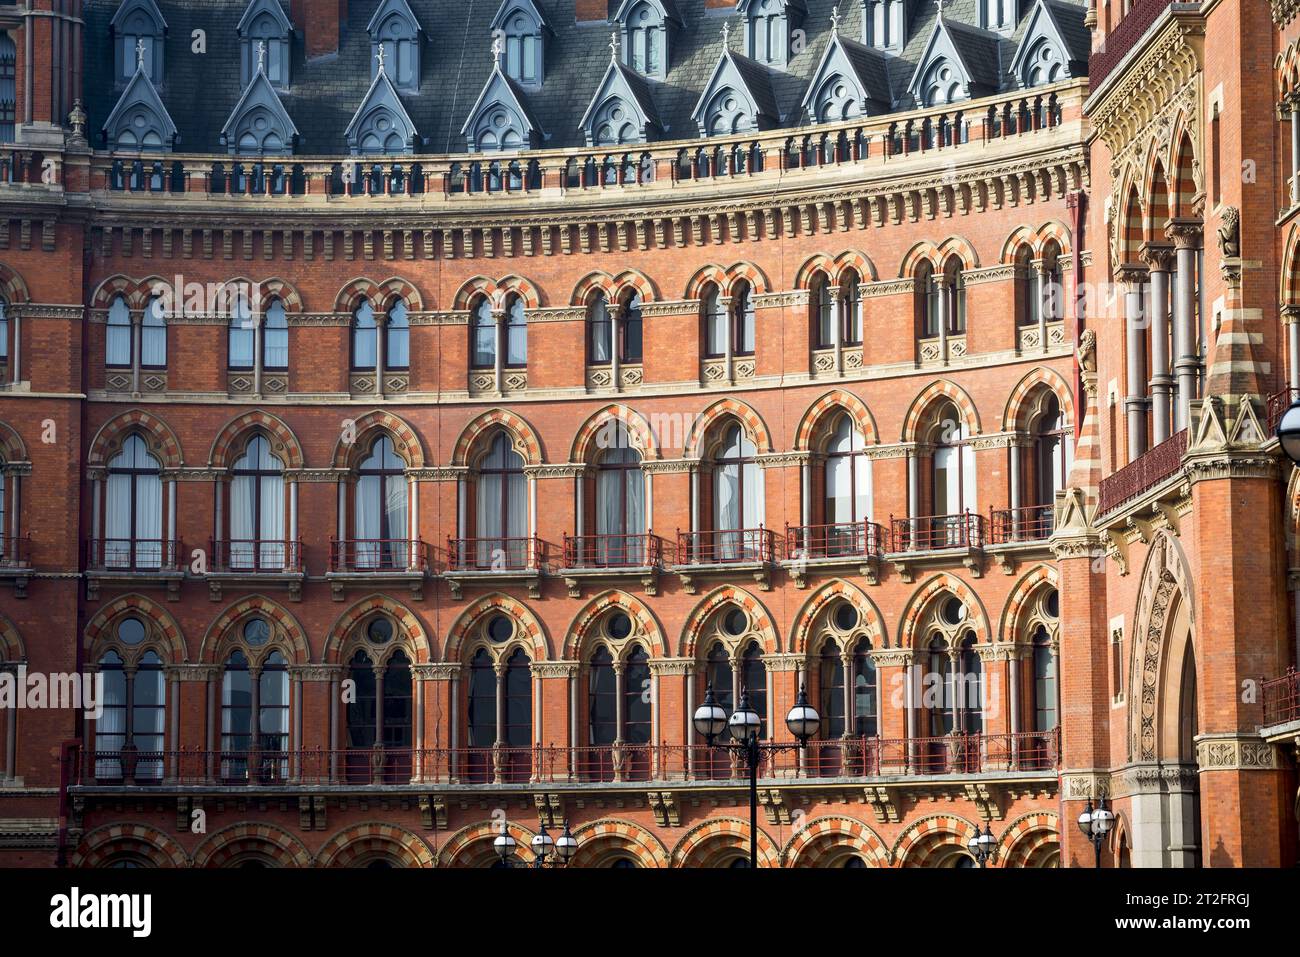 Detalle de cerca de la fachada del St Pancras Renaissance London Hotel que muestra ladrillos y ventanas del hotel de lujo Foto de stock